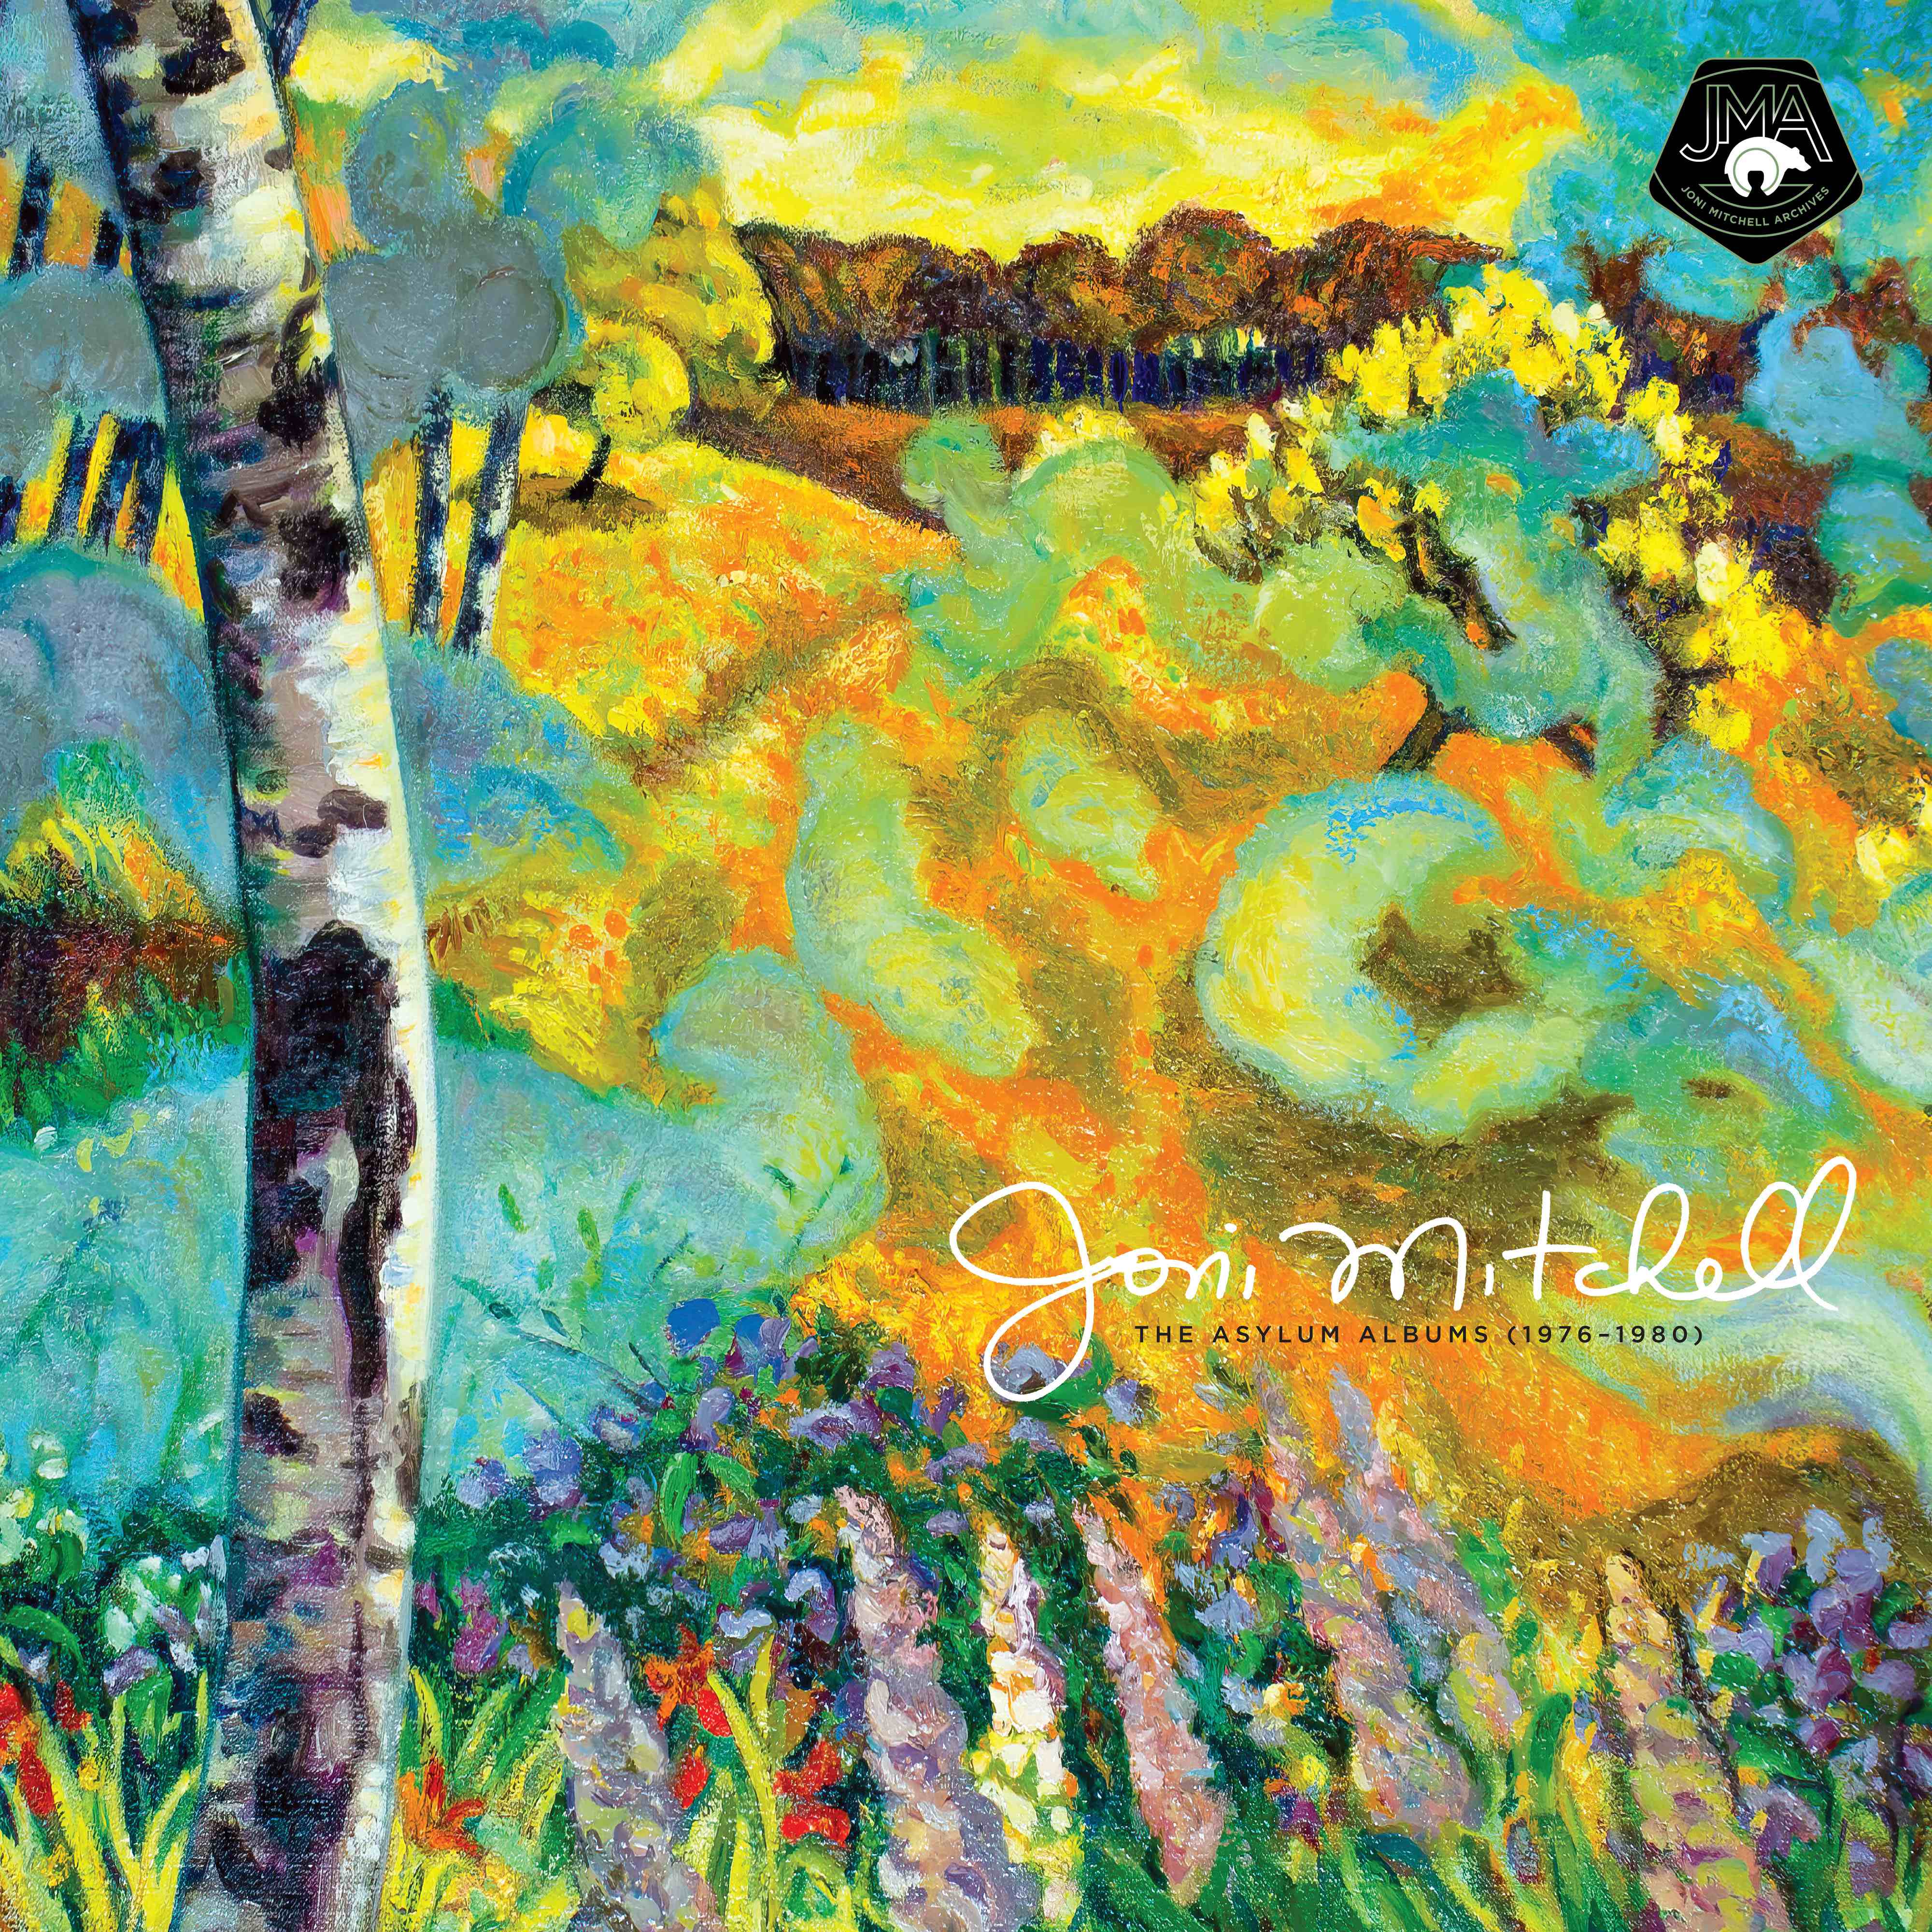 Joni Mitchell - The Asylum Albums (1976-1980): 5CD Box Set